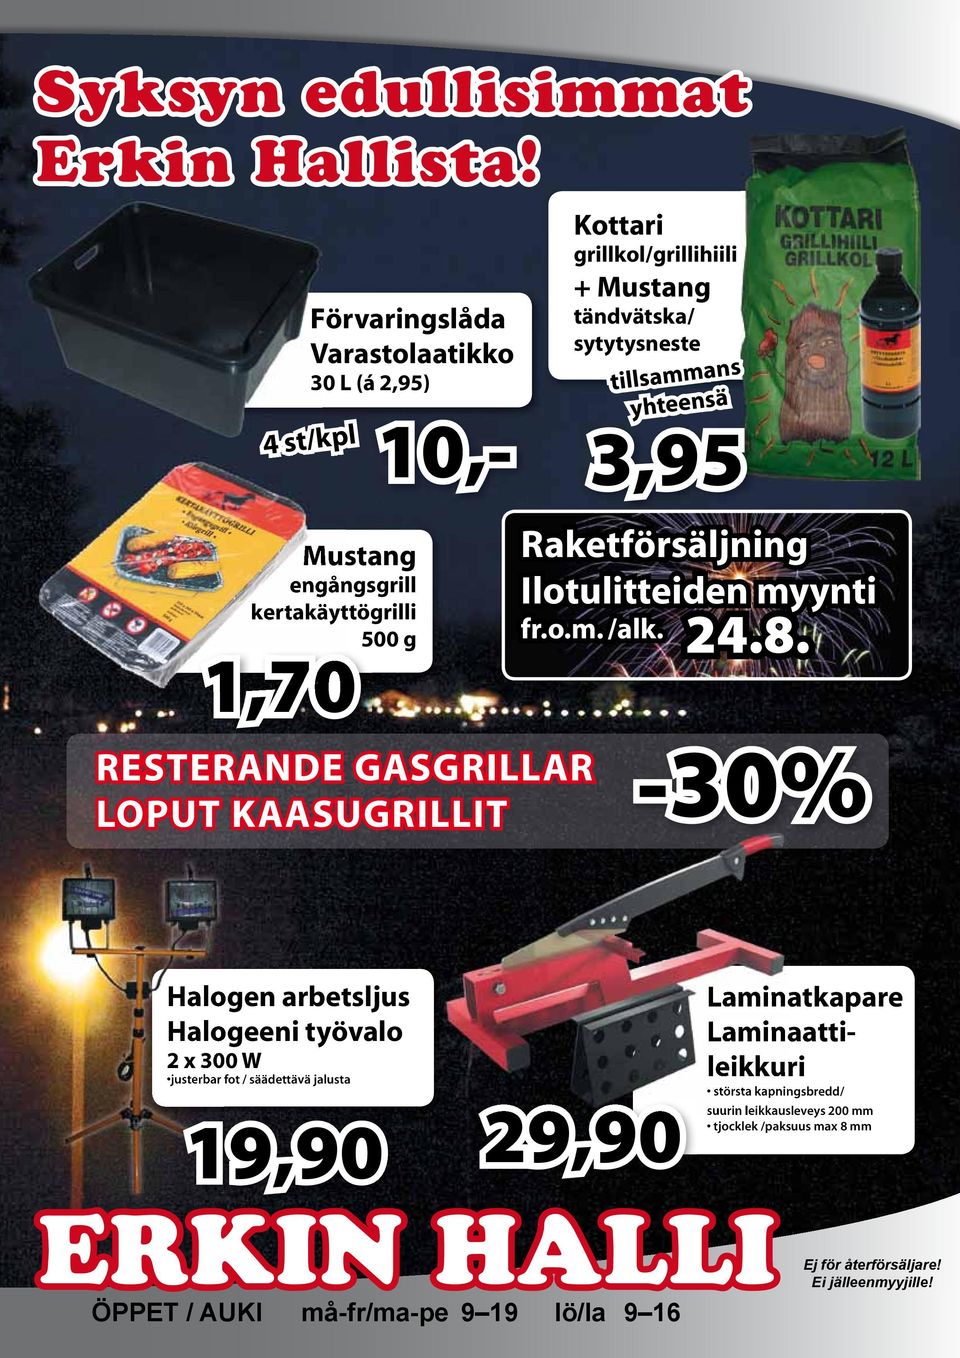 engångsgrill kertakäyttögrilli 500 g 1,70 Raketförsäljning Ilotulitteiden myynti fr.o.m. /alk. 24.8.